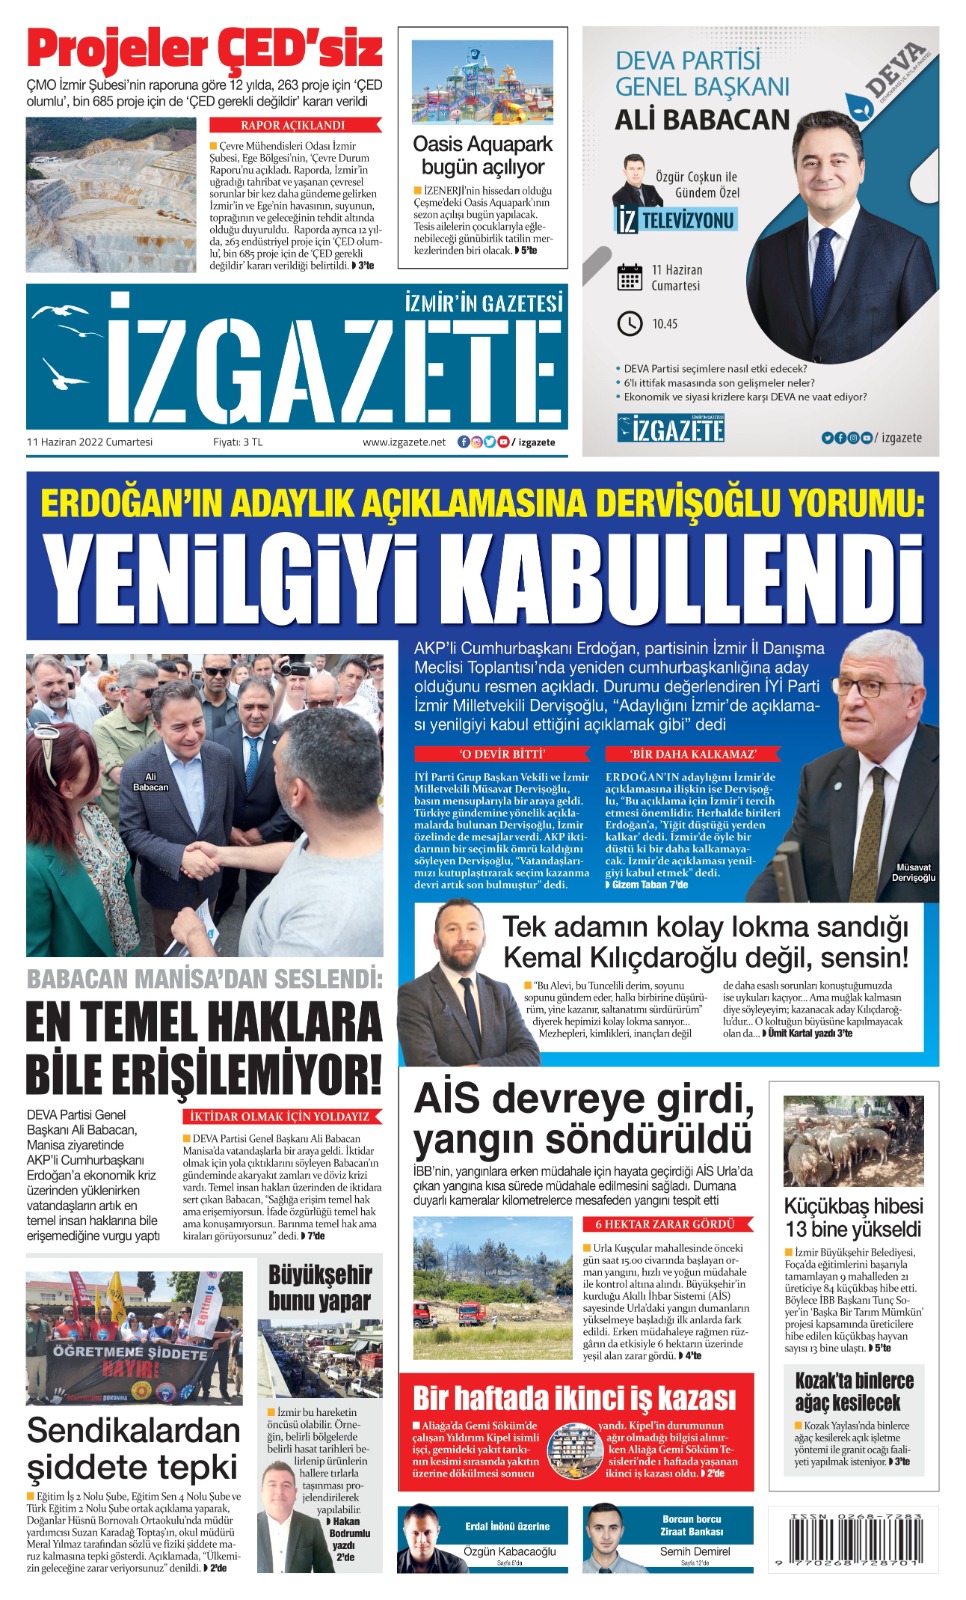 İz Gazete - İzmir'in Gazetesi - 11.06.2022 Manşeti